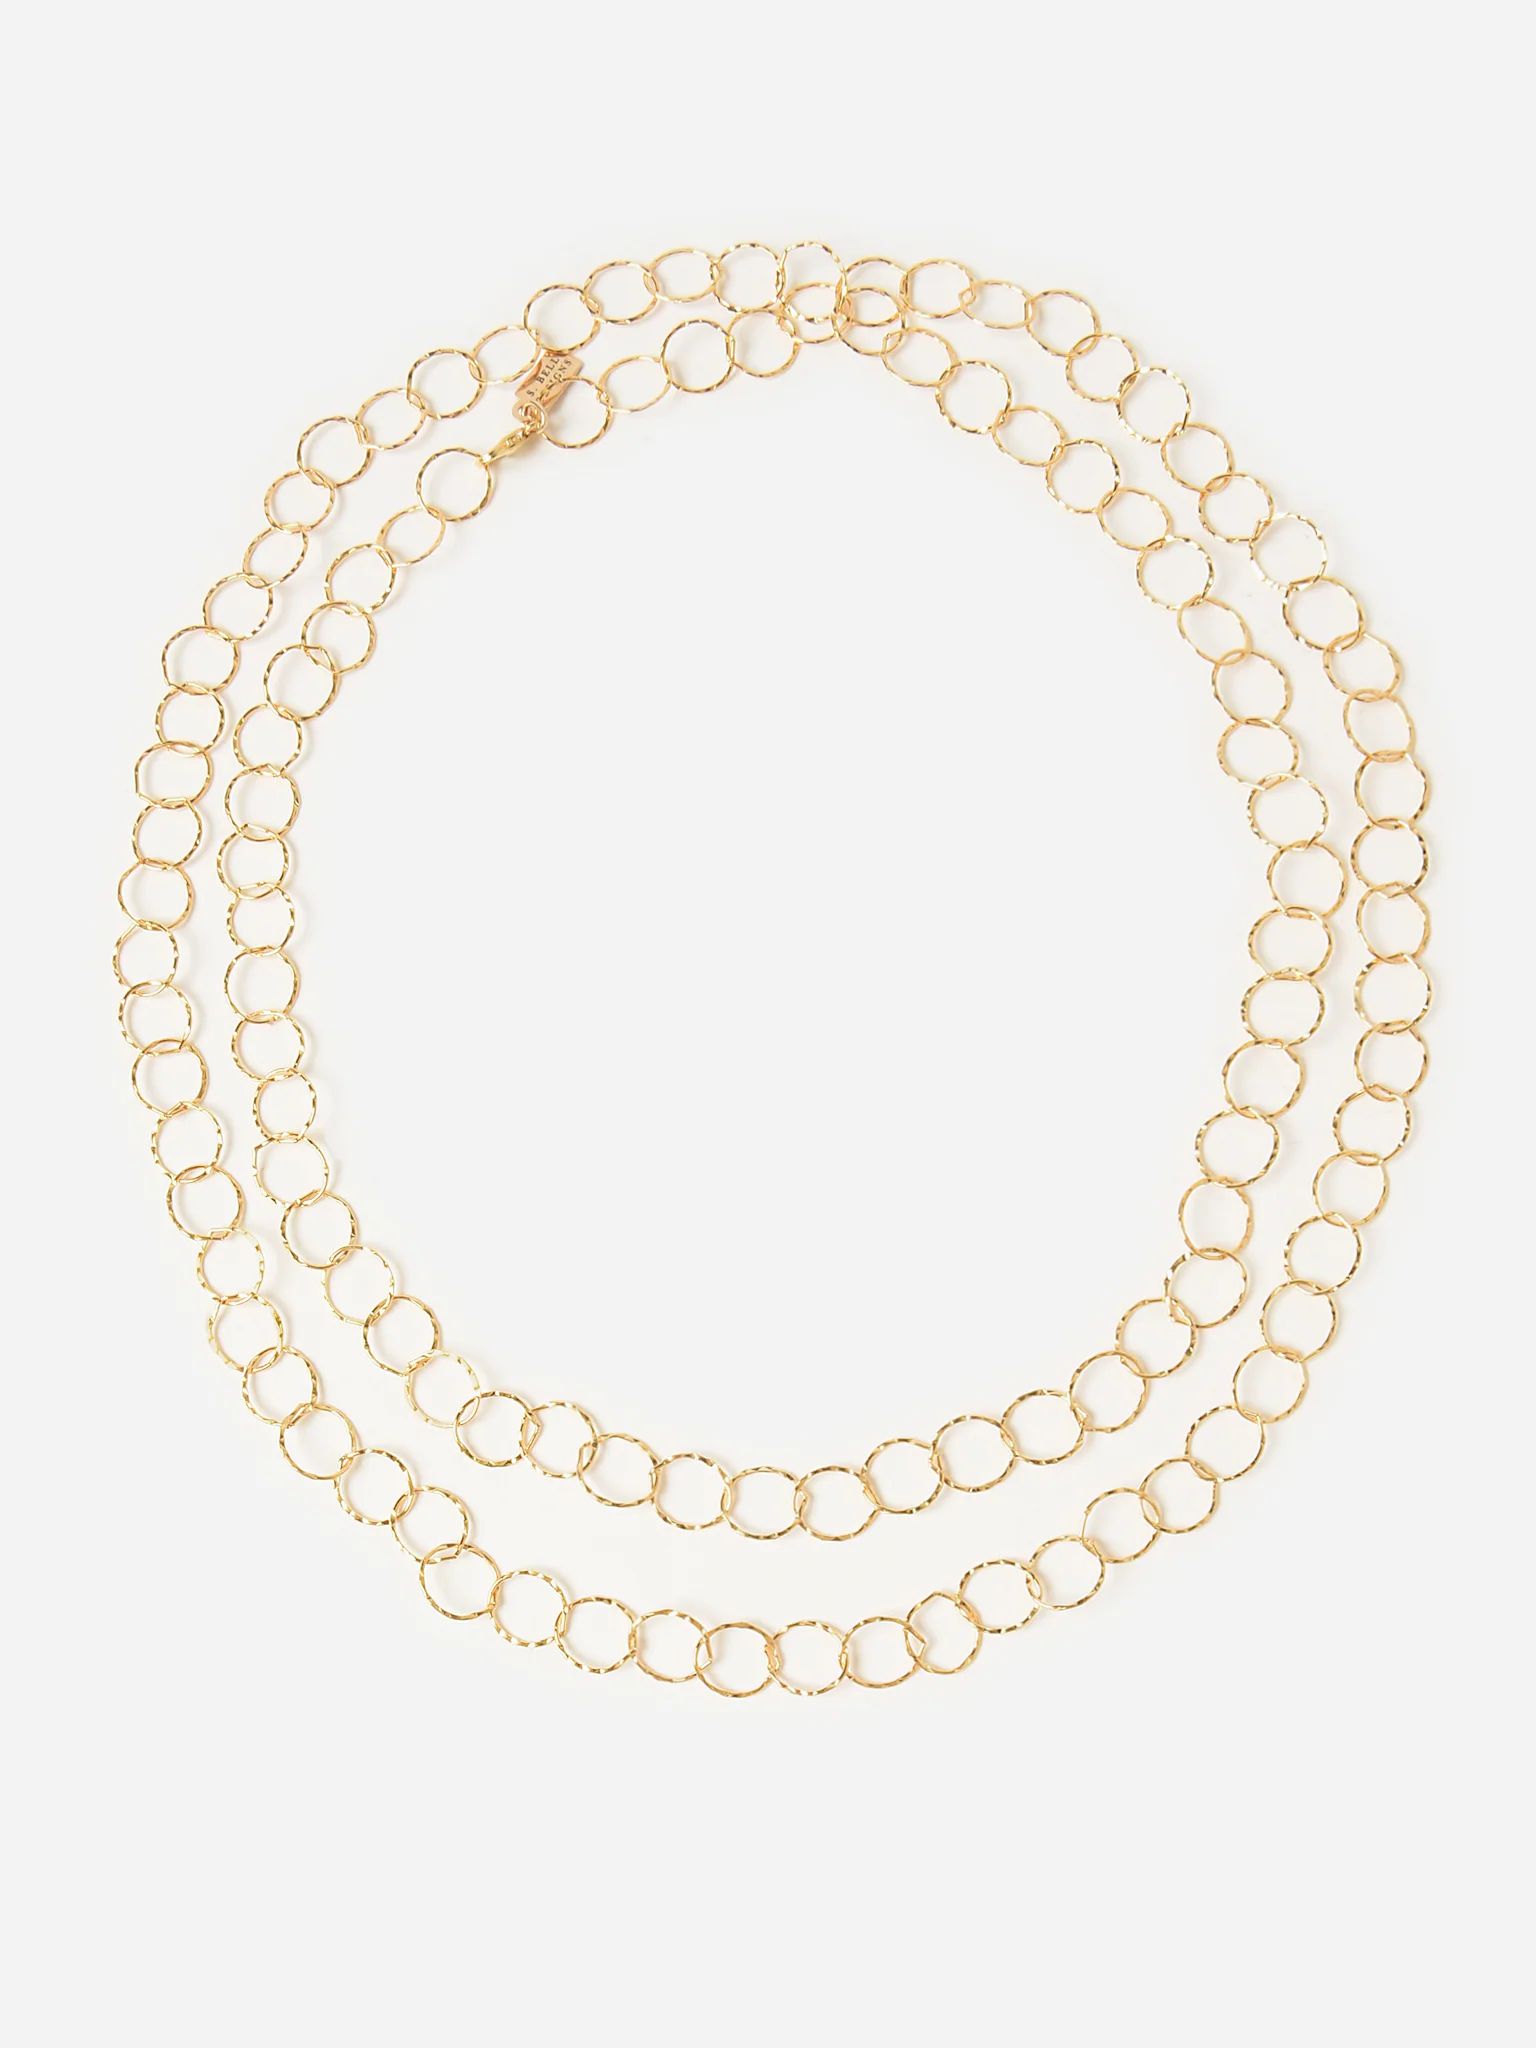 S. BELL
                      
                     Women's Genna Chain Necklace | Saint Bernard